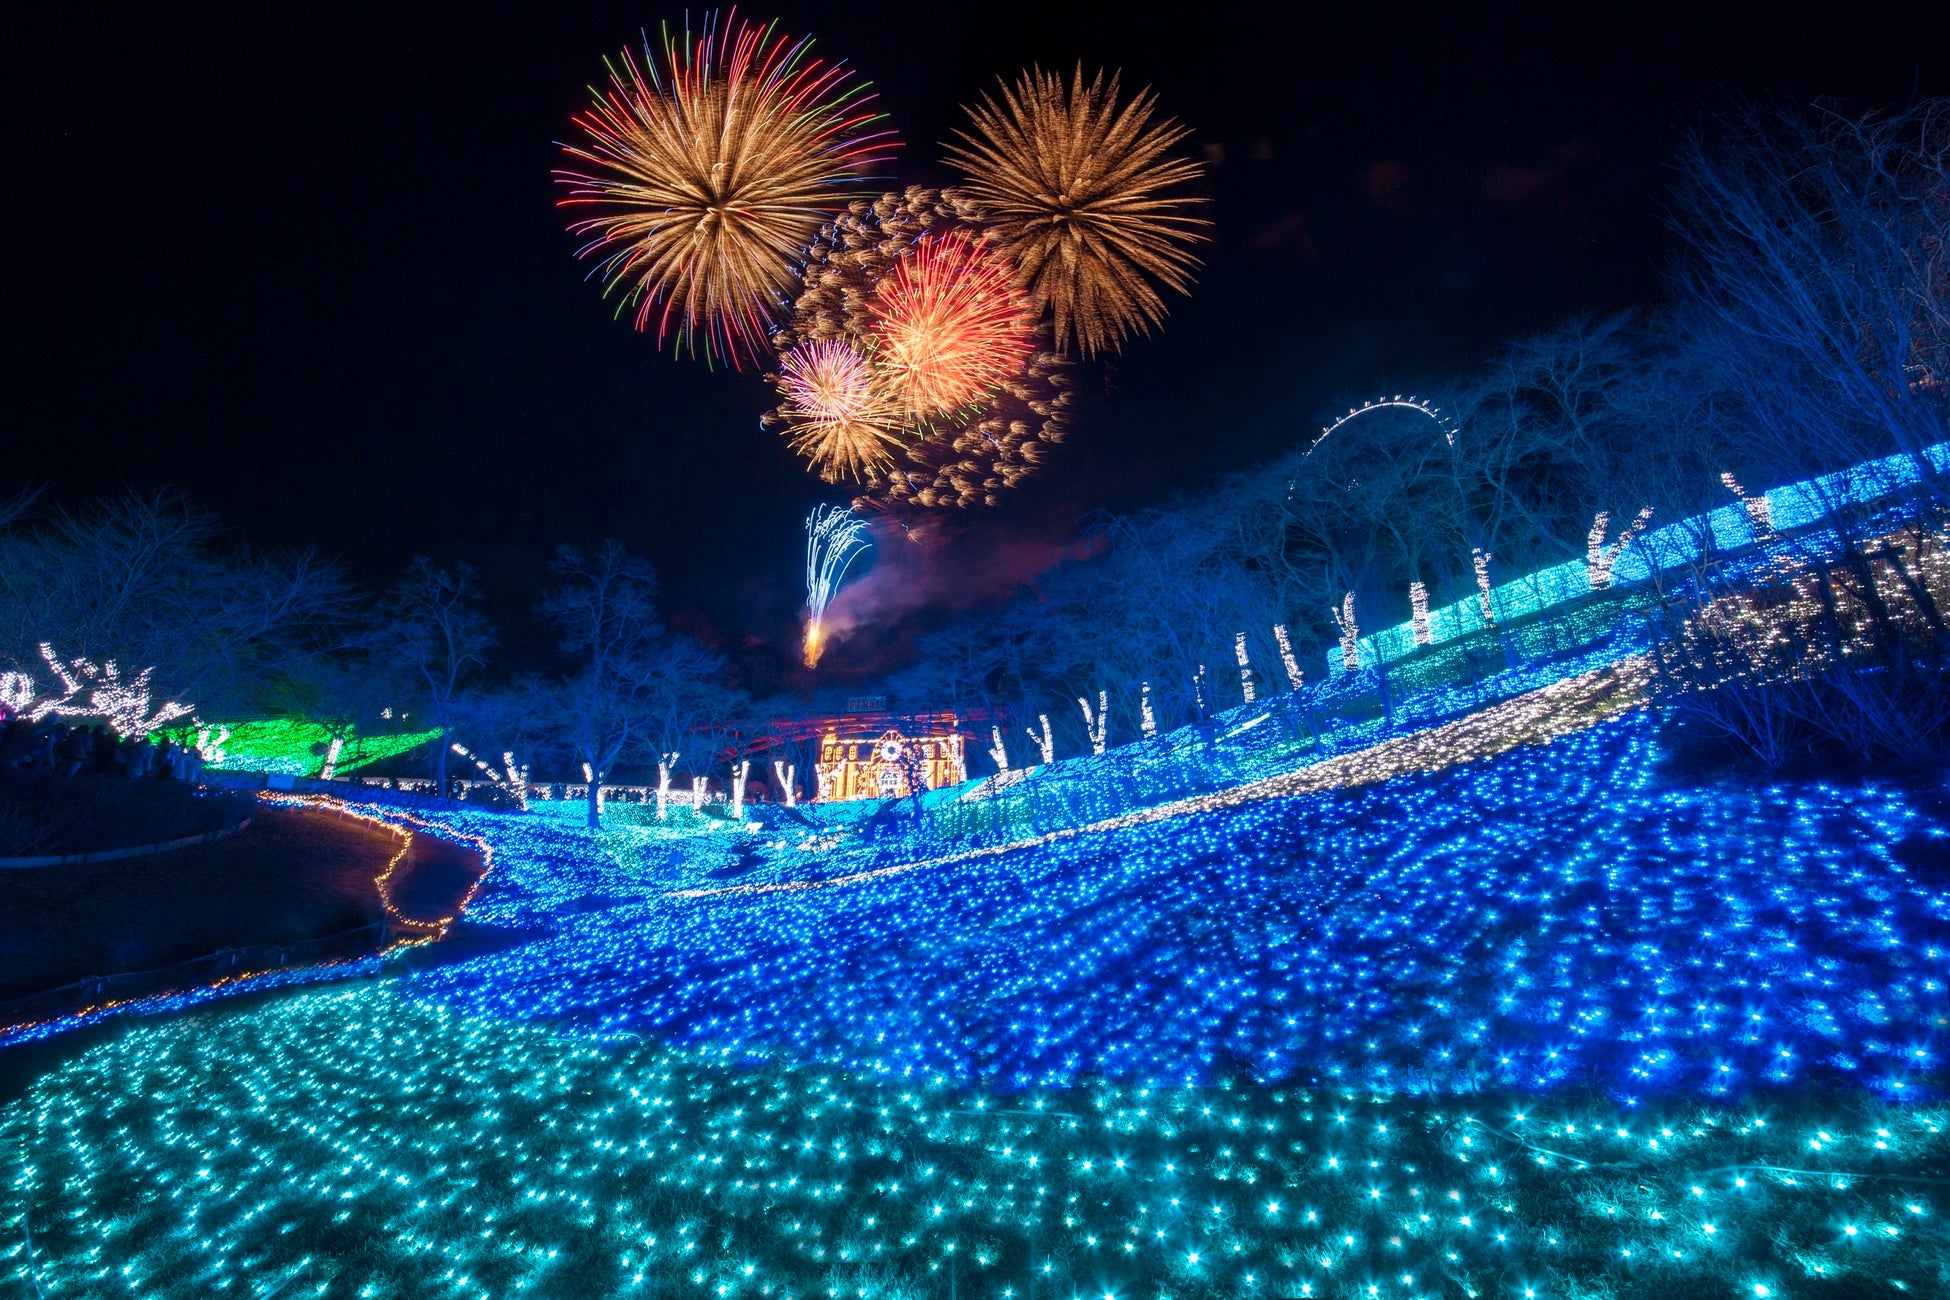 関東三大イルミネーション「さがみ湖イルミリオン」カウントダウンパーティー 2022-2023開催